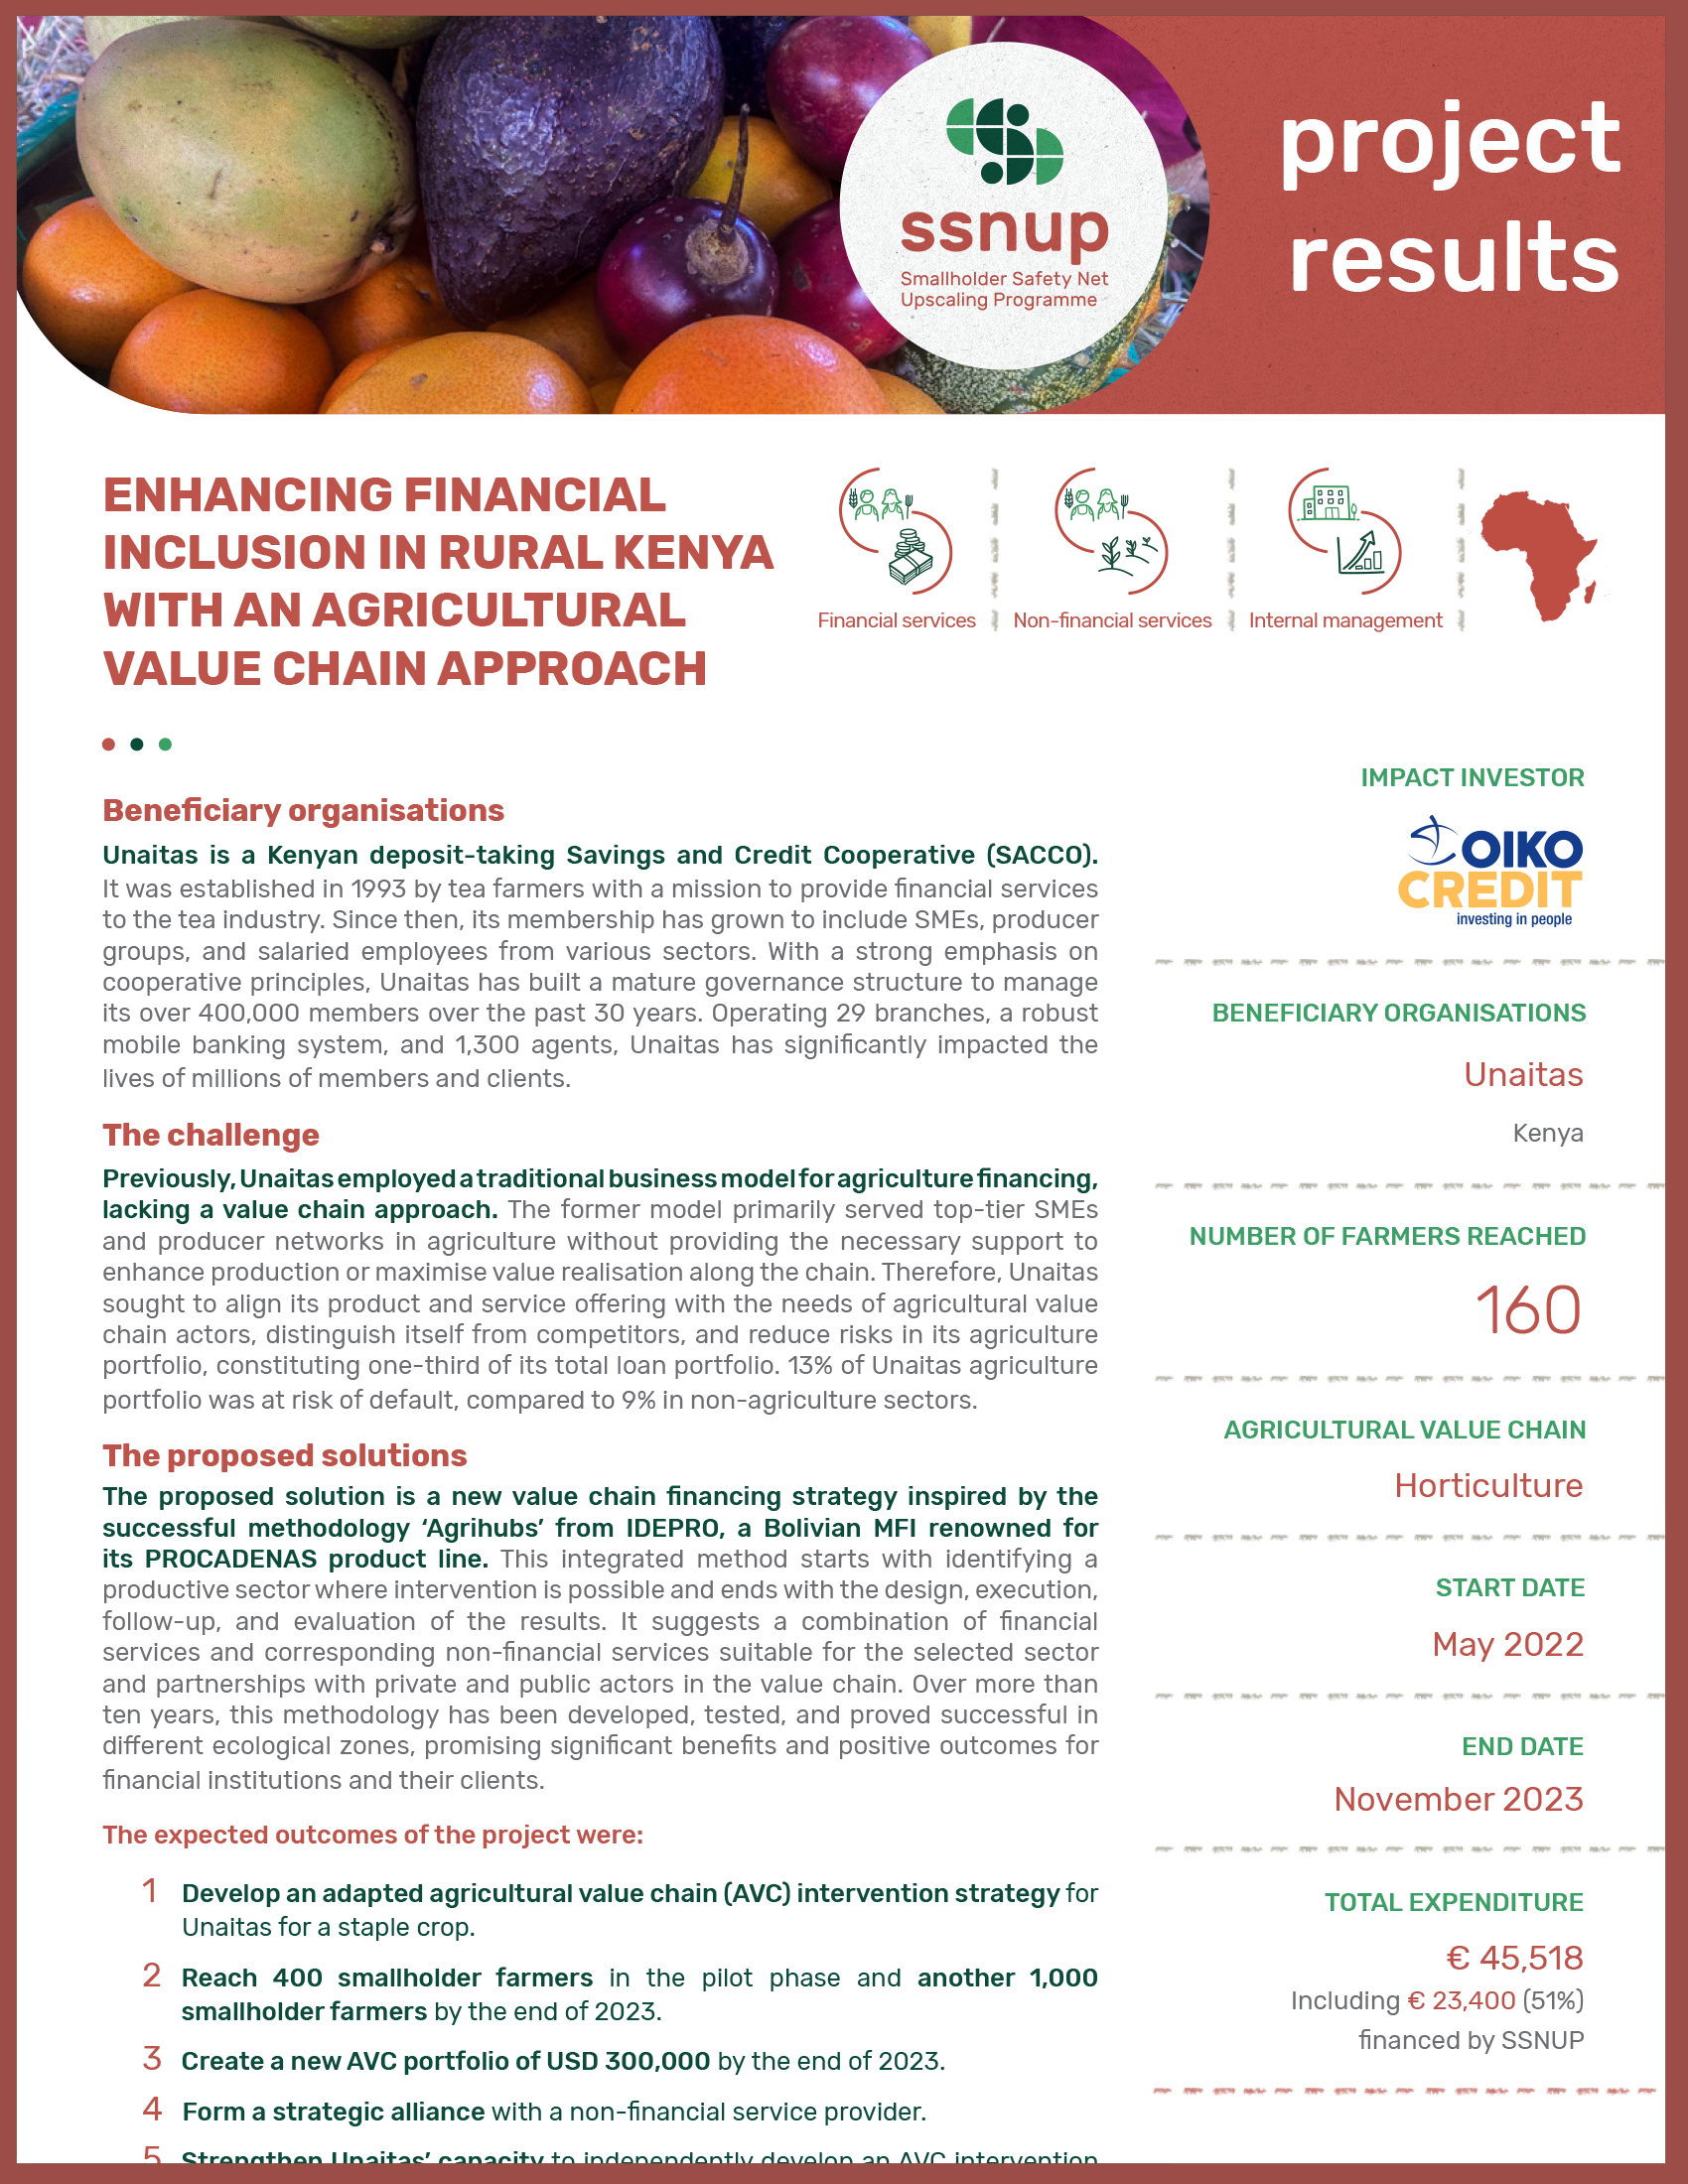 Mejorar la inclusión financiera en las zonas rurales de Kenia con un enfoque de cadena de valor agrícola